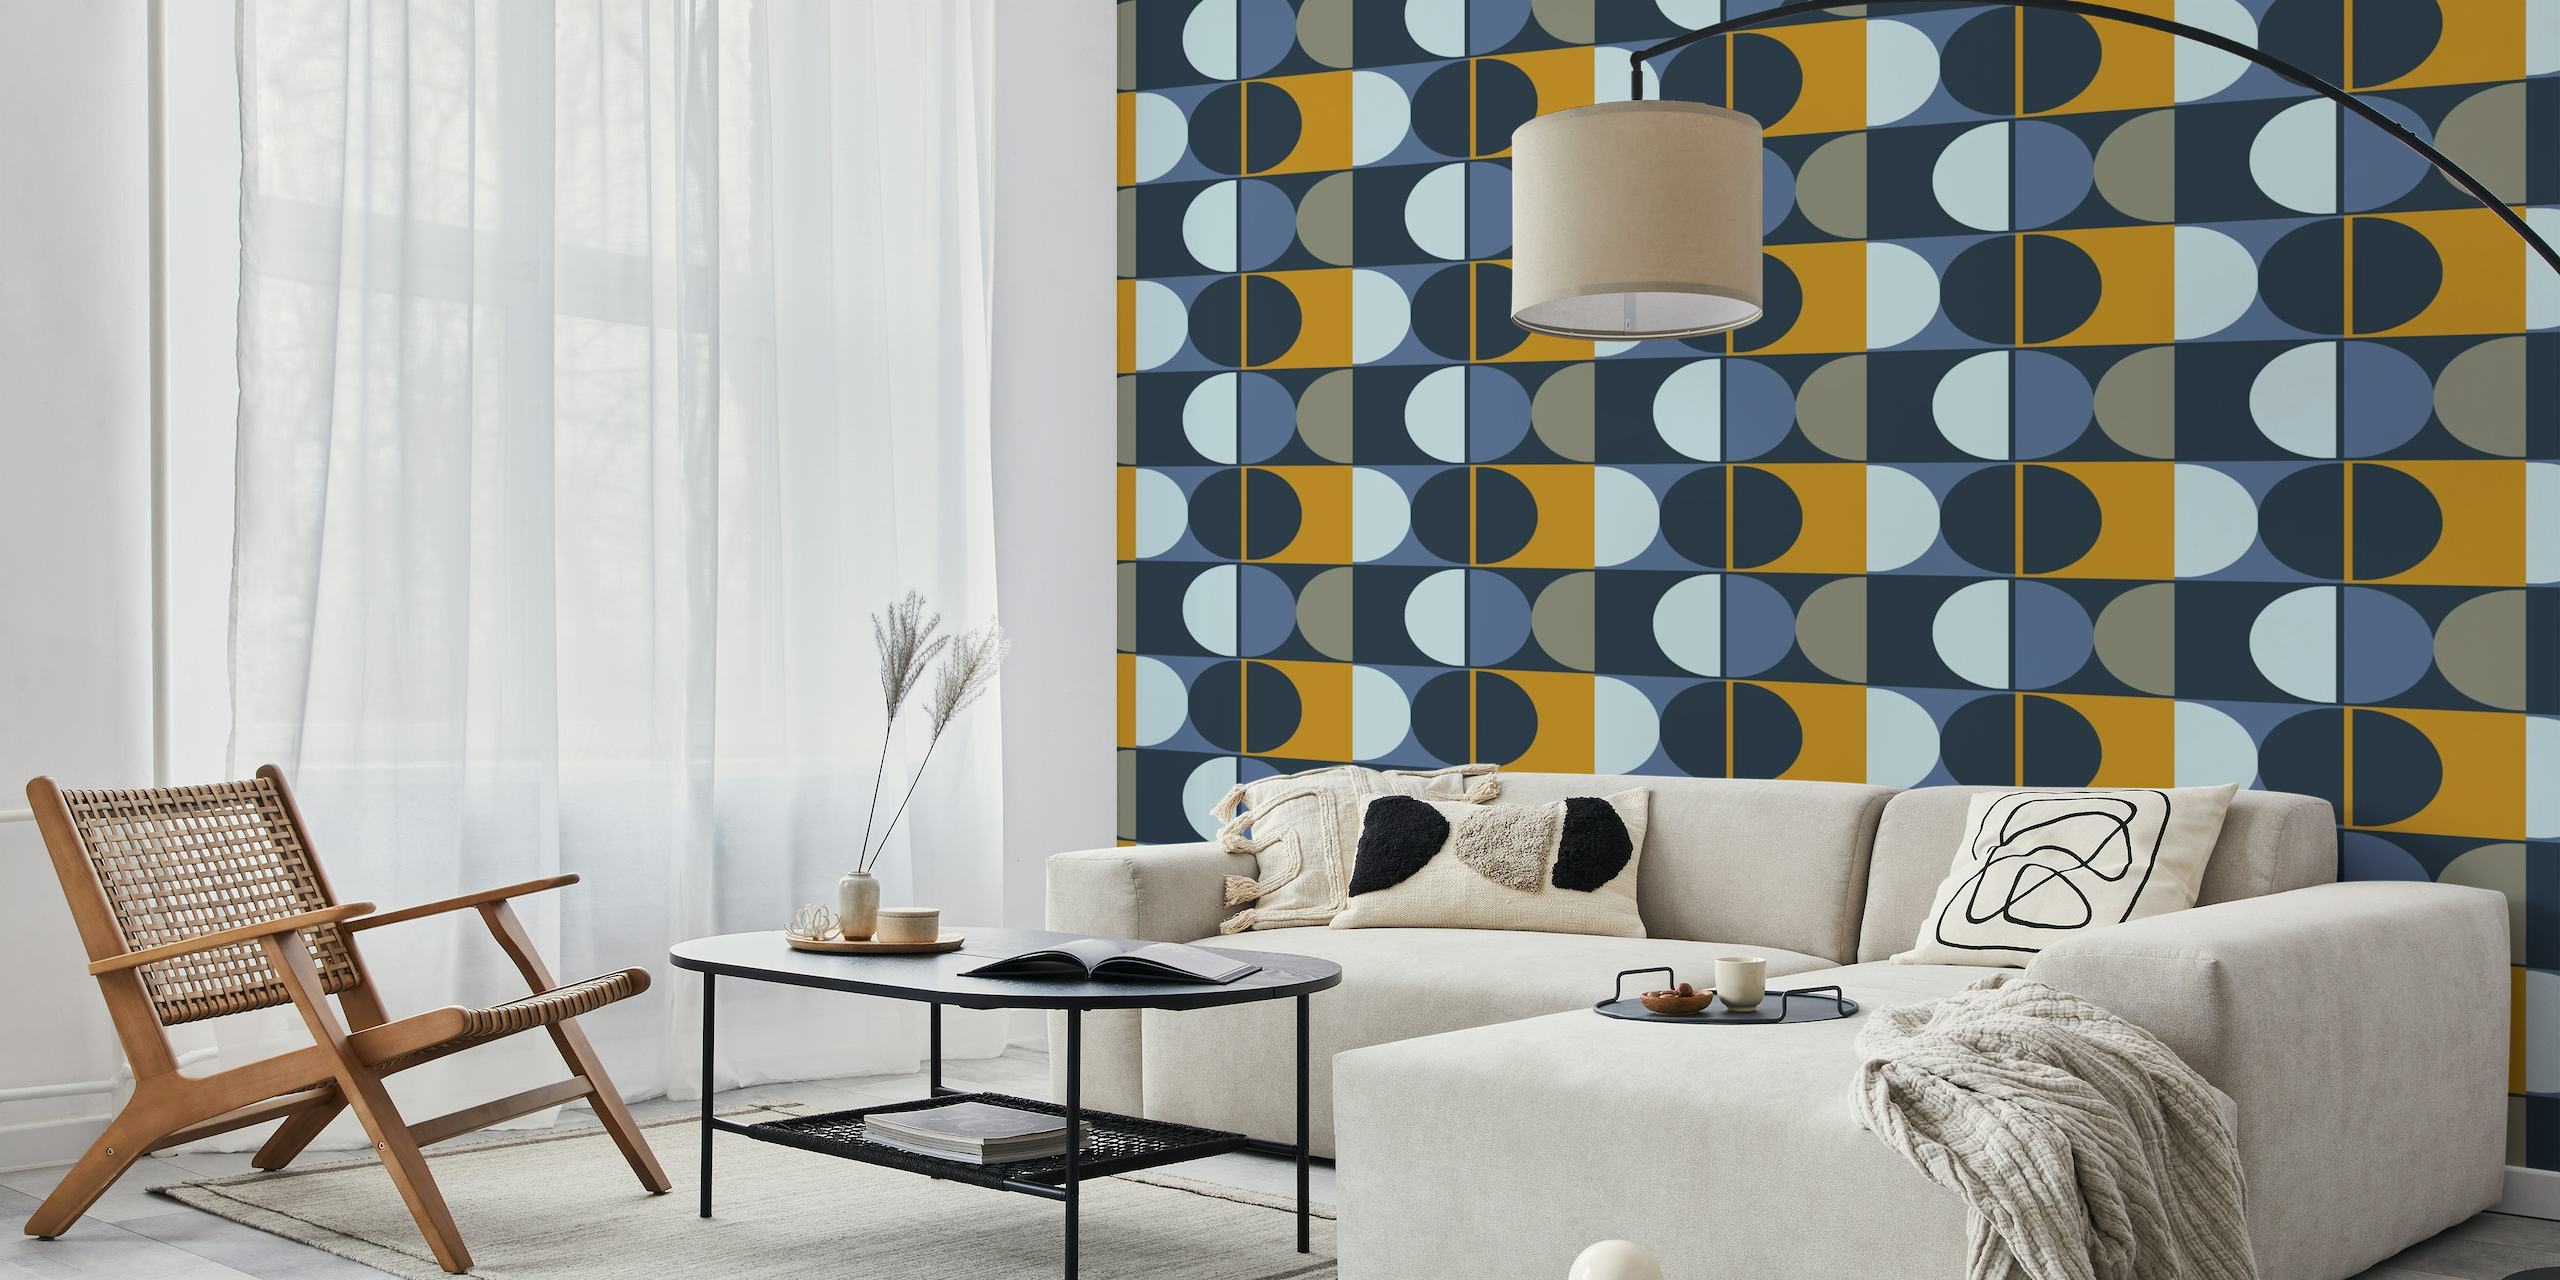 Abstract geometrisch fotobehang met marineblauw, taupe en mosterdgeel kleurenschema geïnspireerd op bossa nova